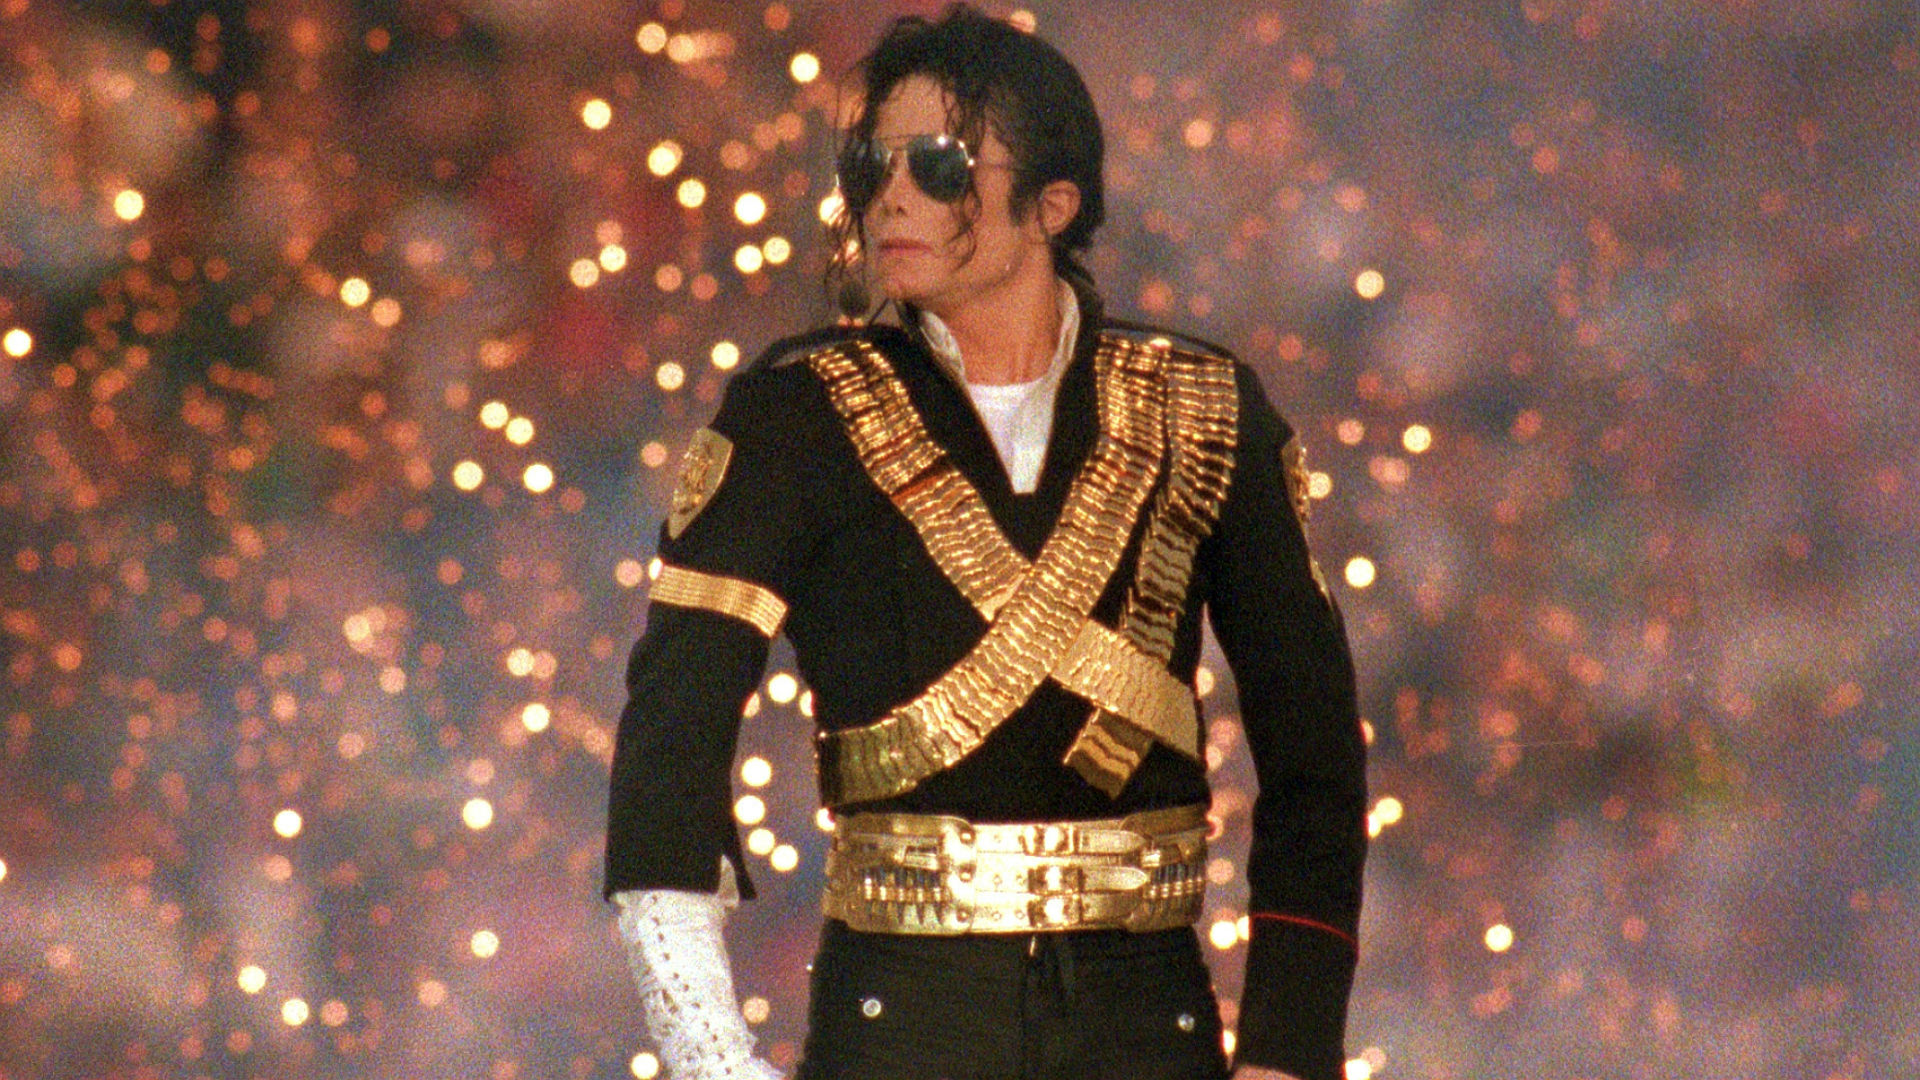 Michael jackson best. Michael Jackson super Bowl 1993.